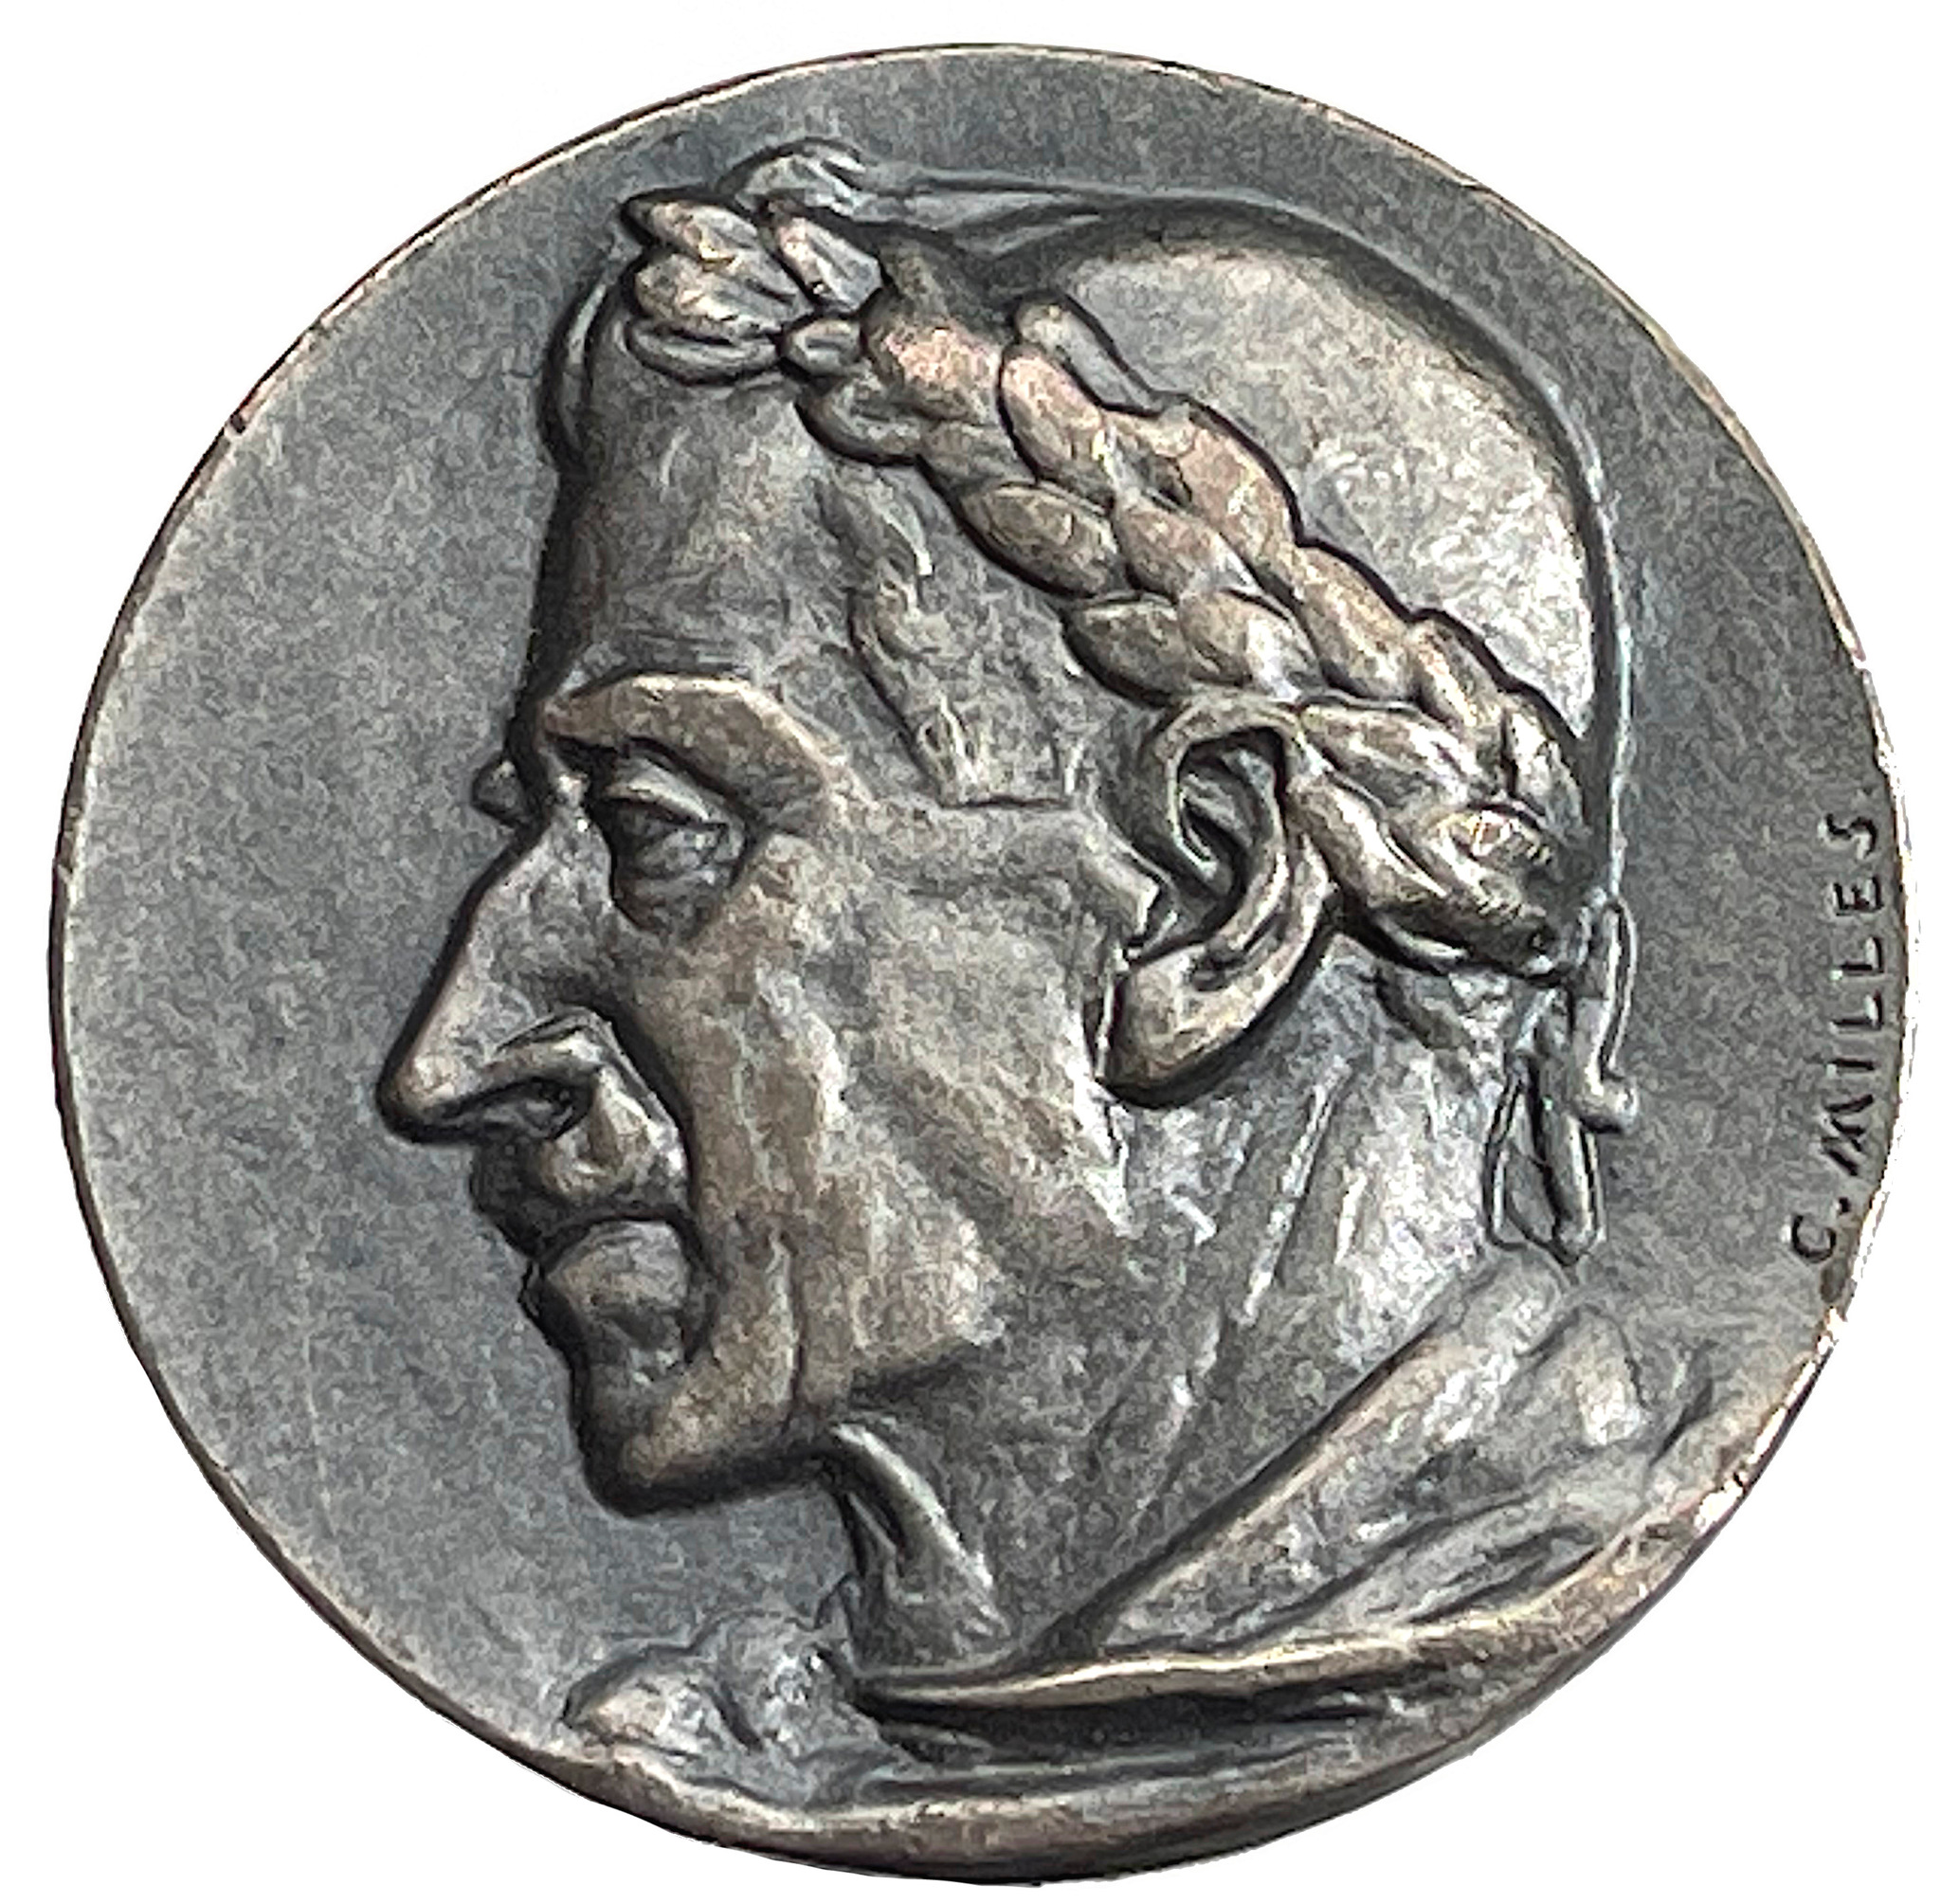 Carl Milles - Verner von Heidenstam 70 år 6 juli 1929 silvermedalj - Mycket sällsynt